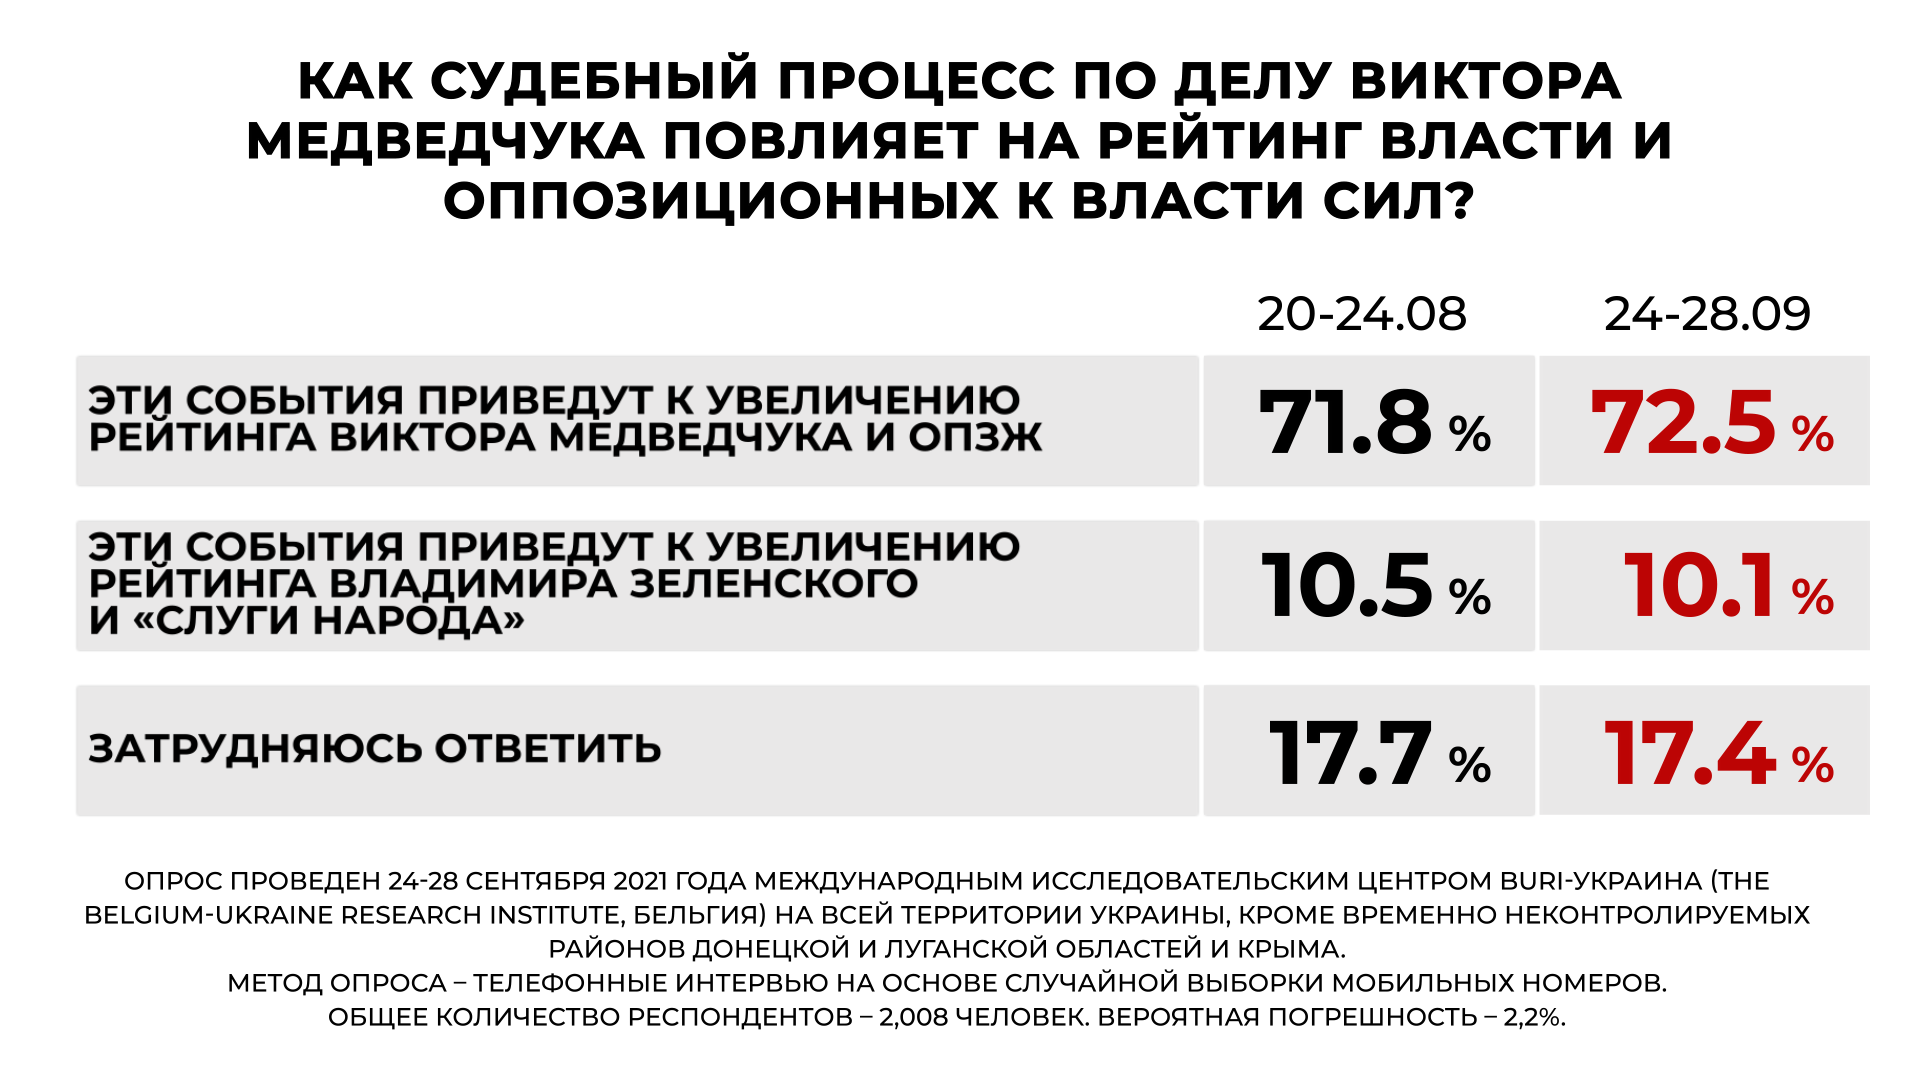 Преследуя Медведчука власть отвлекает внимание людей от проблем, - западные социологи об опросе украинцев - фото 4